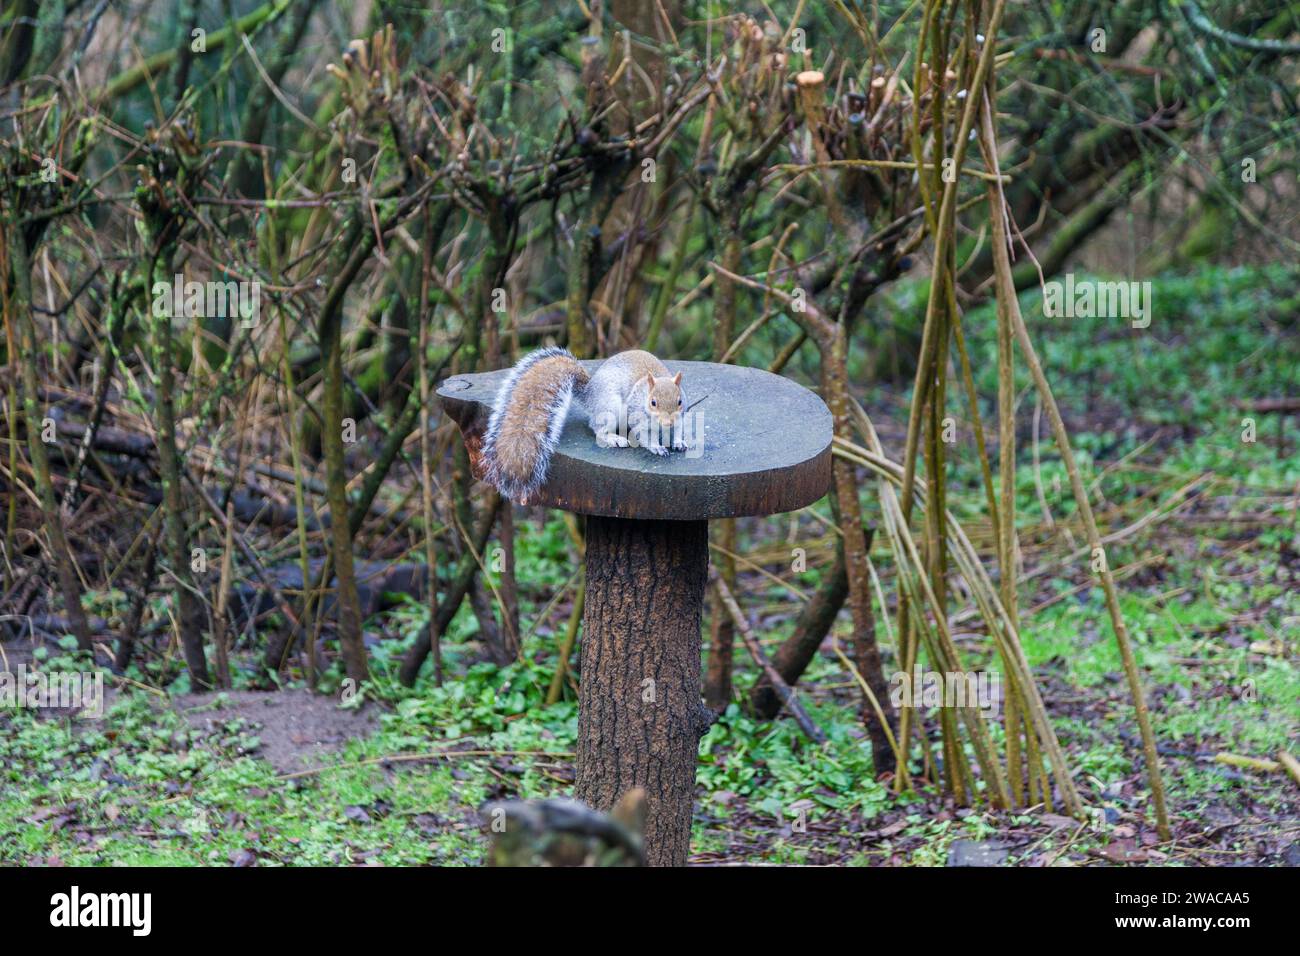 Uno scoiattolo grigio (Sciurus carolinensis) che si alimenta da una tavola di uccelli in zona boschiva, Stockton, Inghilterra, Regno Unito Foto Stock